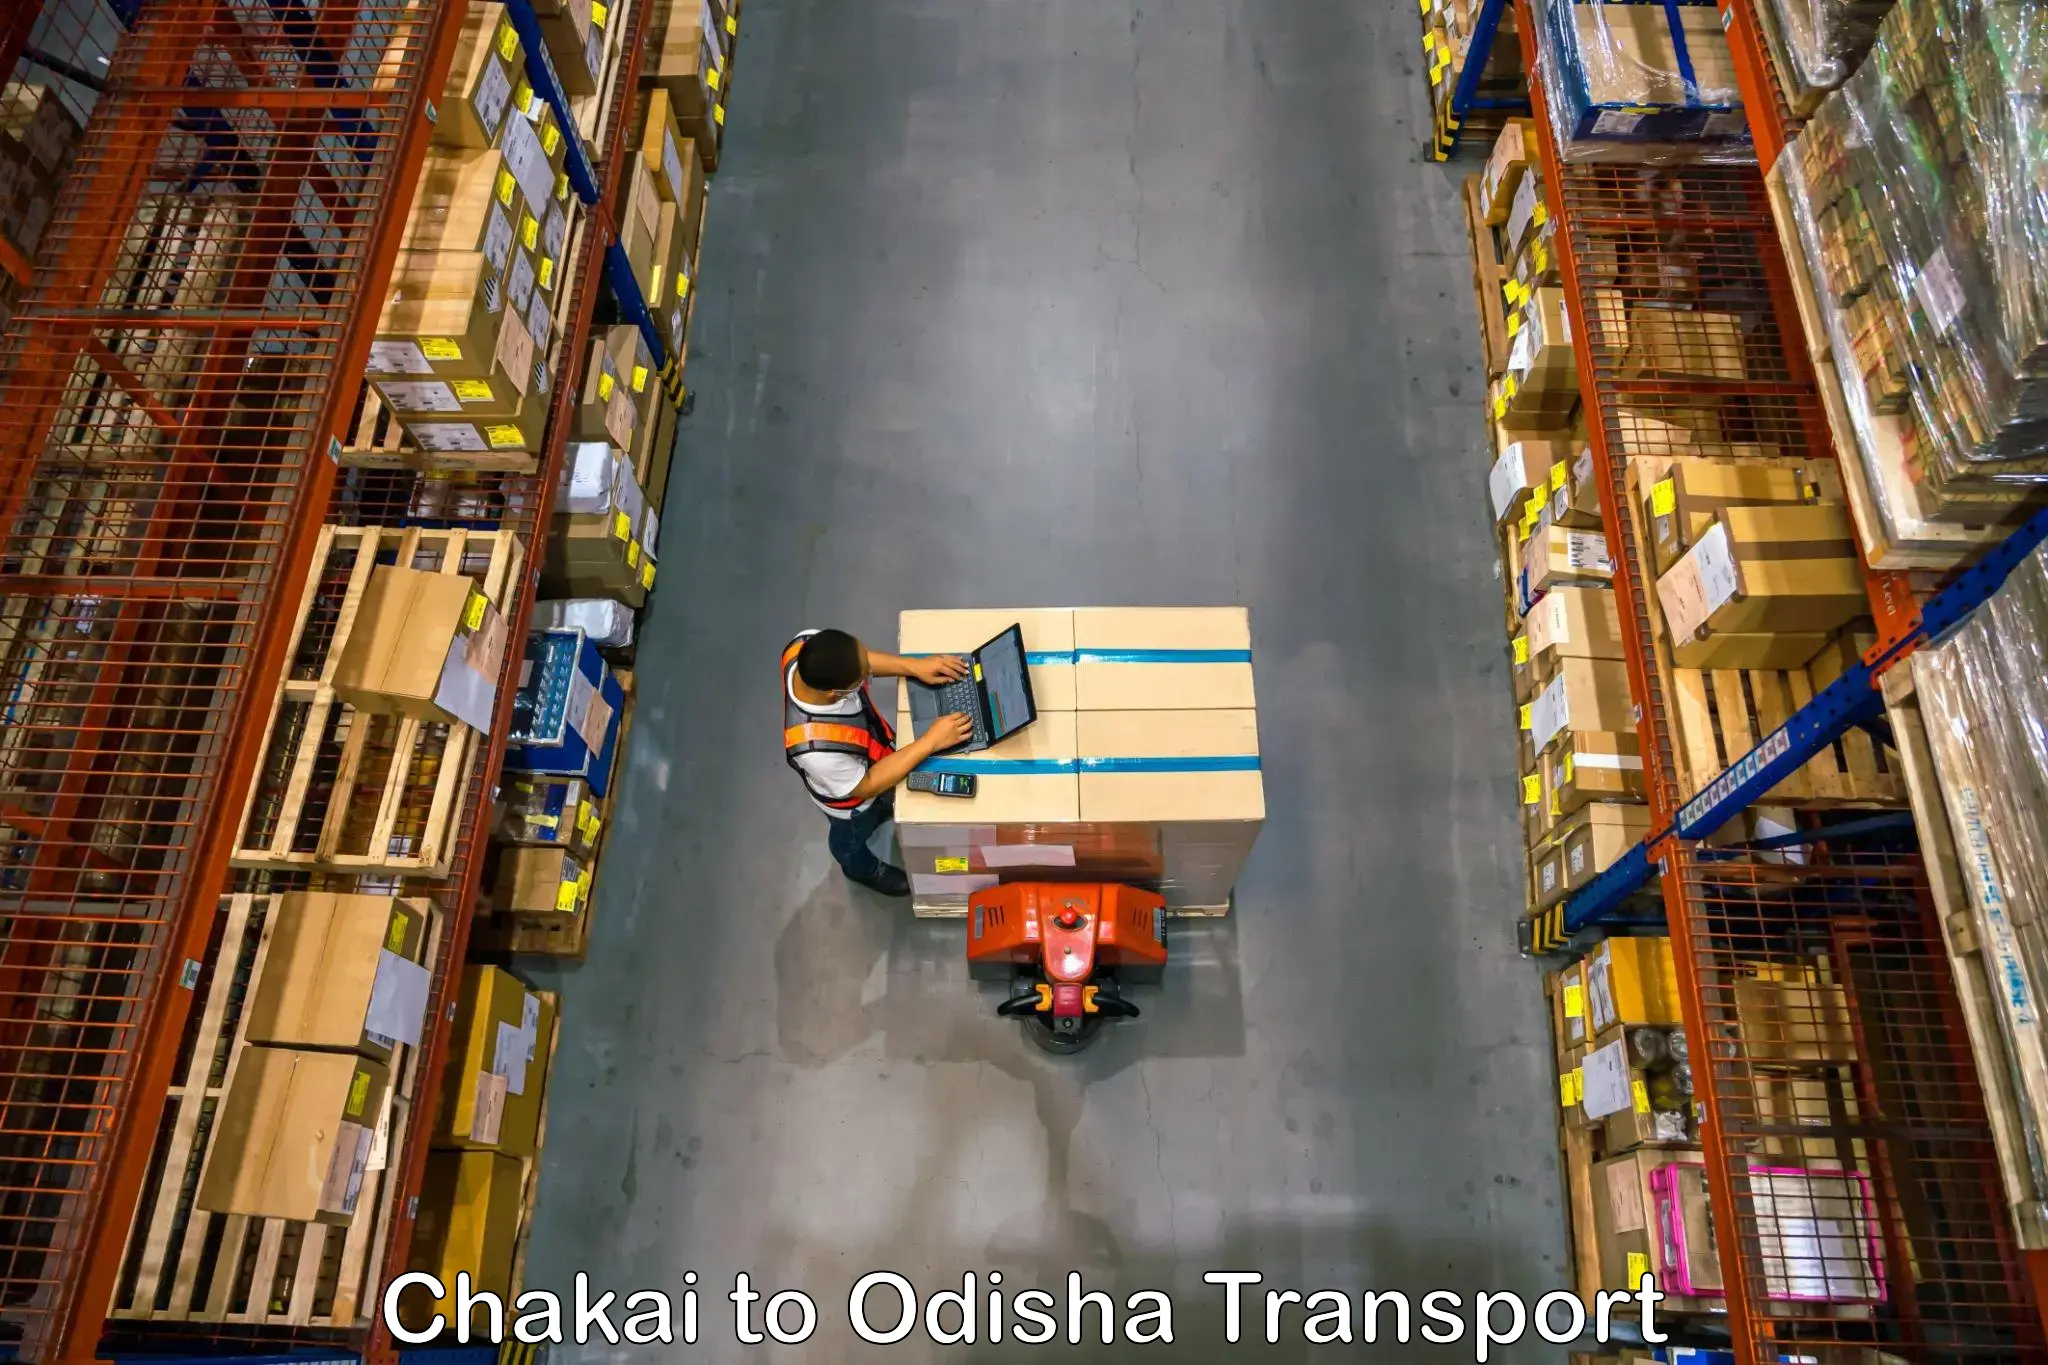 Lorry transport service Chakai to Odisha